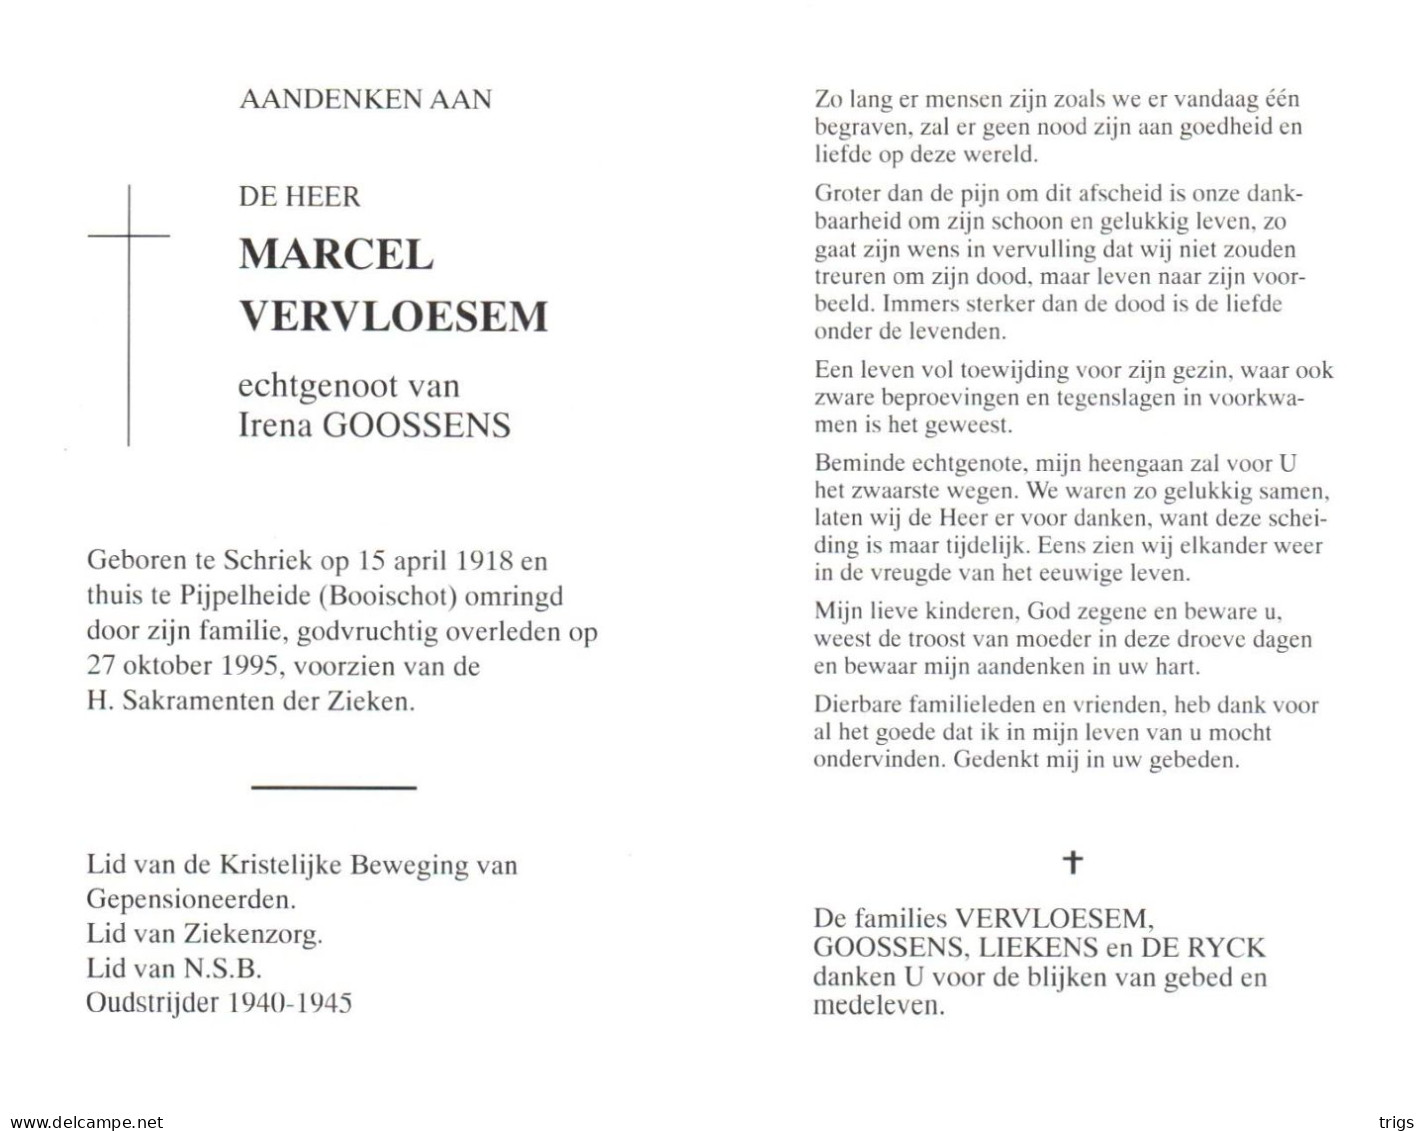 Marcel Vervloesem (1918-1995) - Andachtsbilder